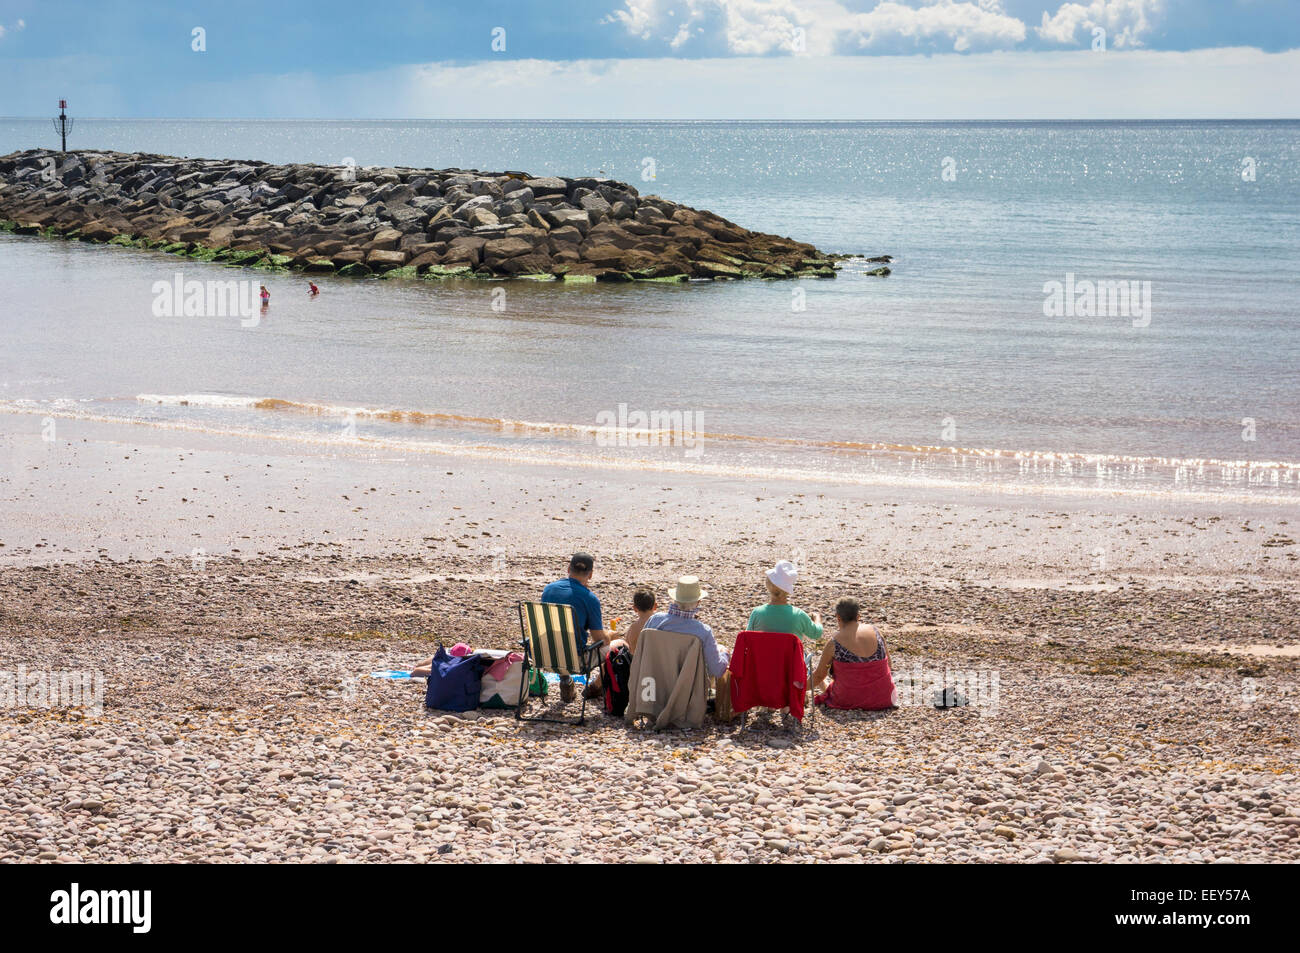 Persone in sedie a sdraio sulla spiaggia in vacanza al mare uk resort di Sidmouth, East Devon, Inghilterra, Regno Unito Foto Stock